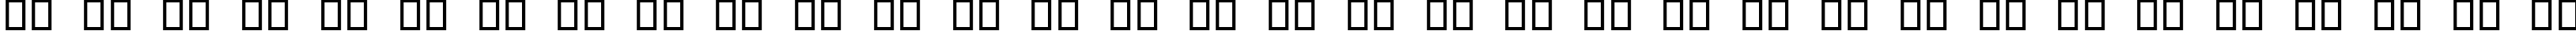 Пример написания русского алфавита шрифтом Guitar Pro